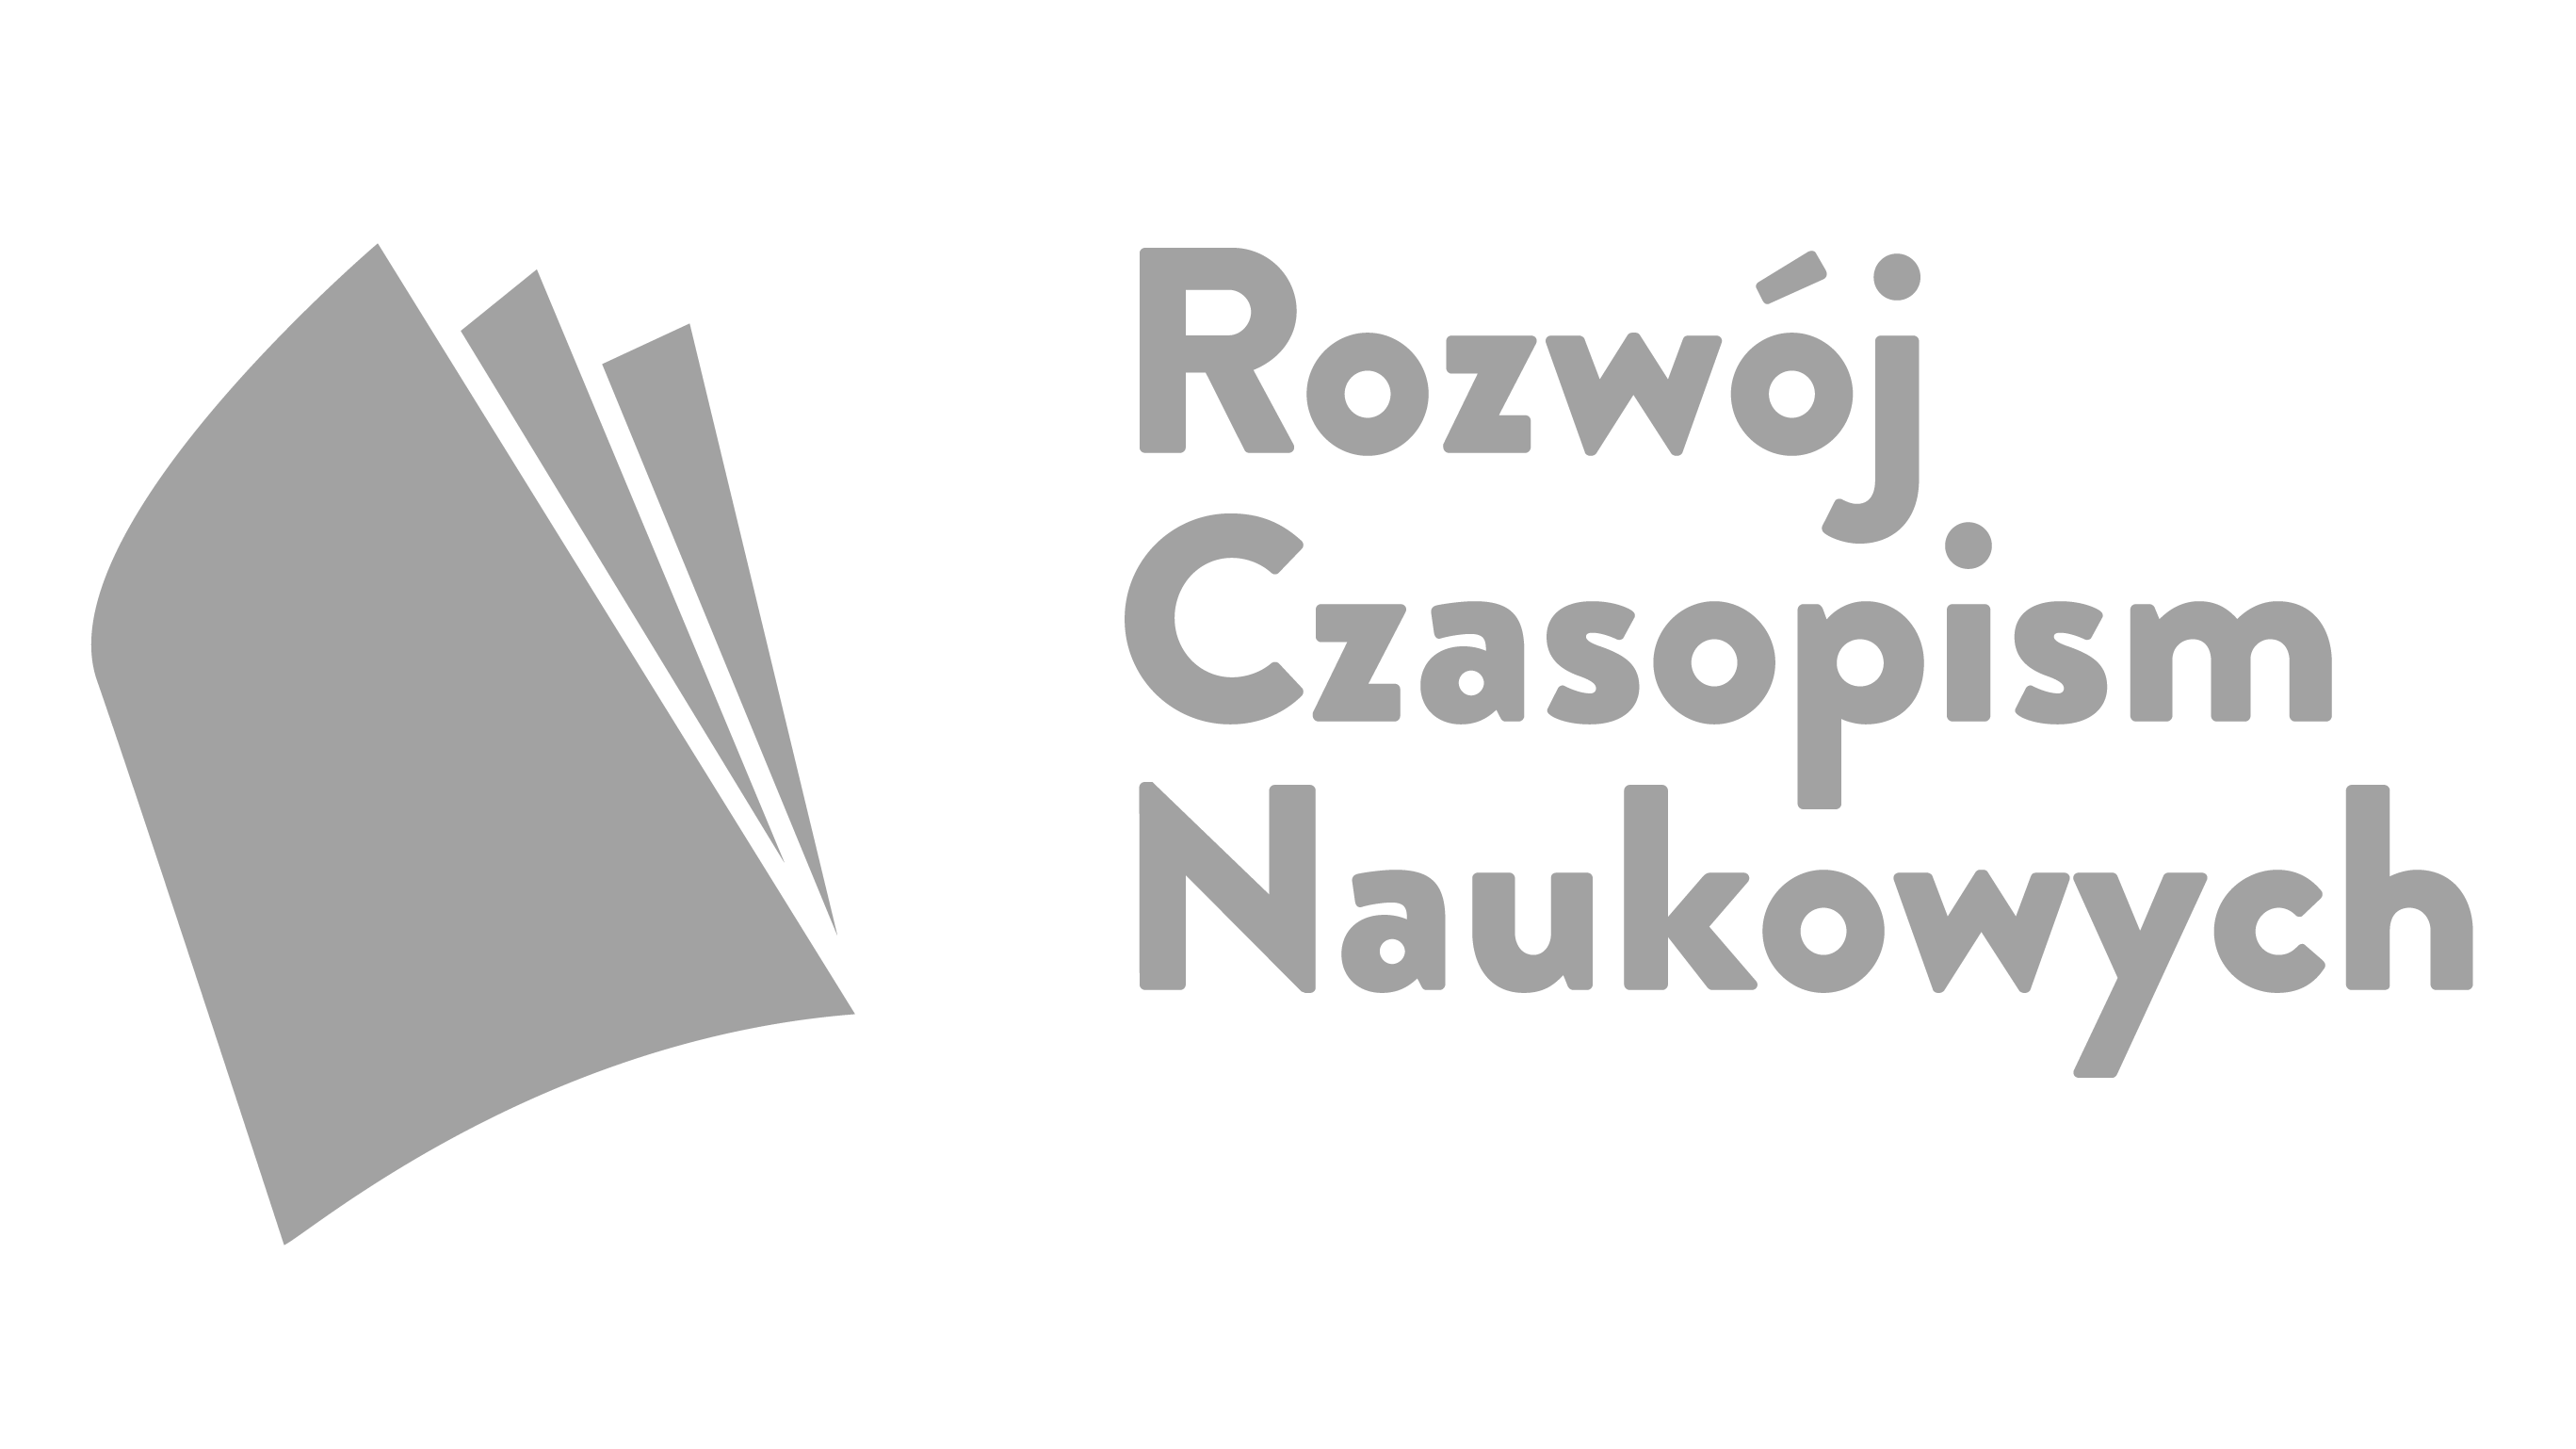  logo Rozwój czasopism naukowych